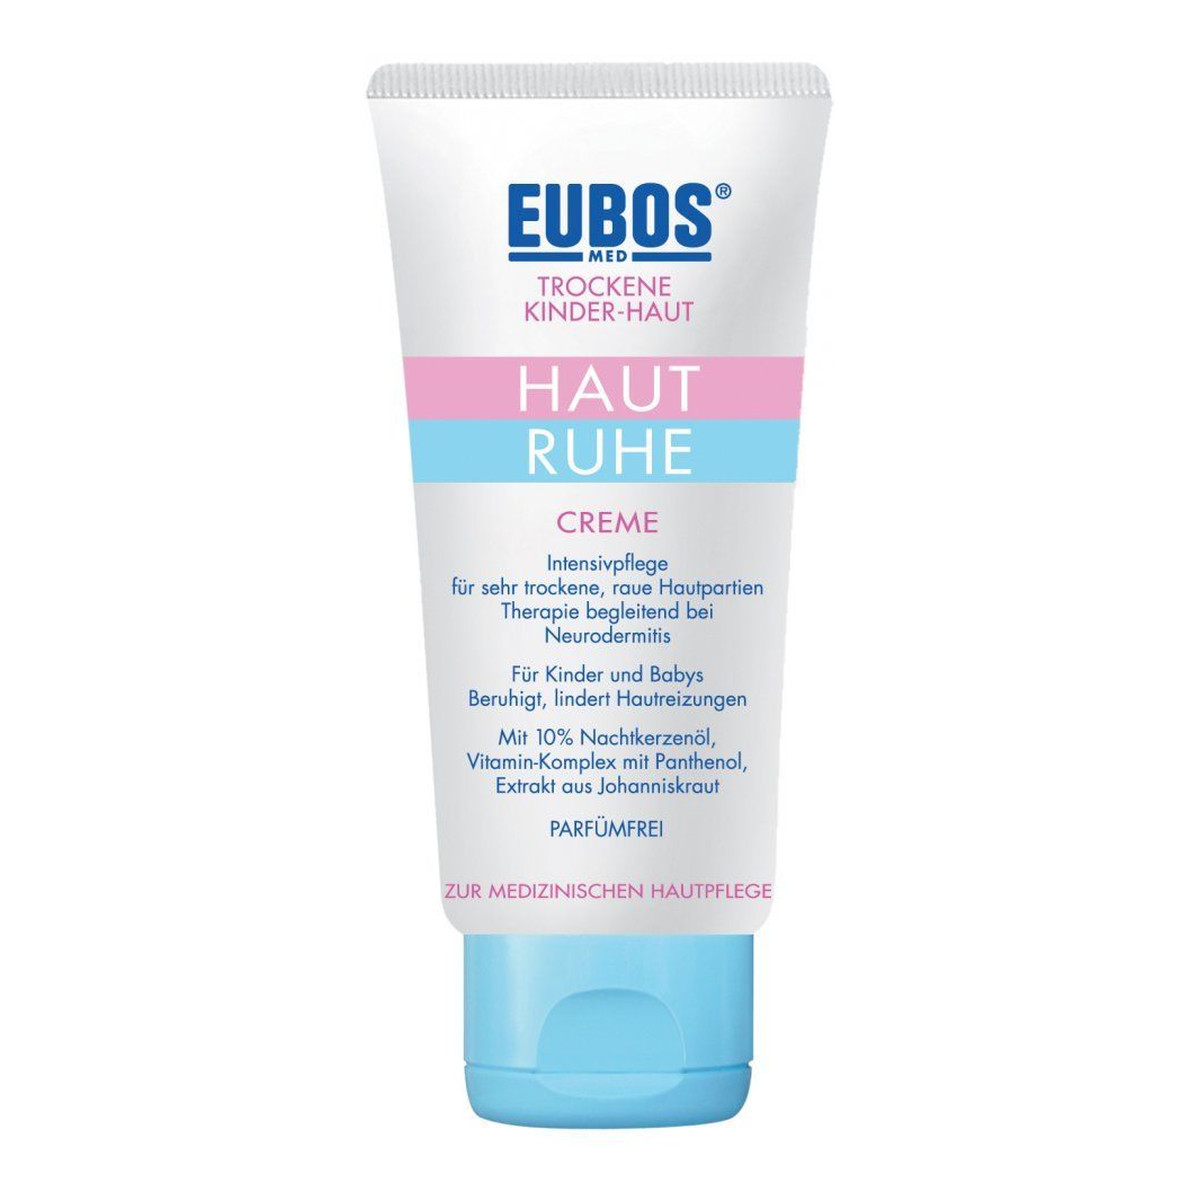 Eubos-Med Haut krem odnawiający barierę ochronną skóry 50ml